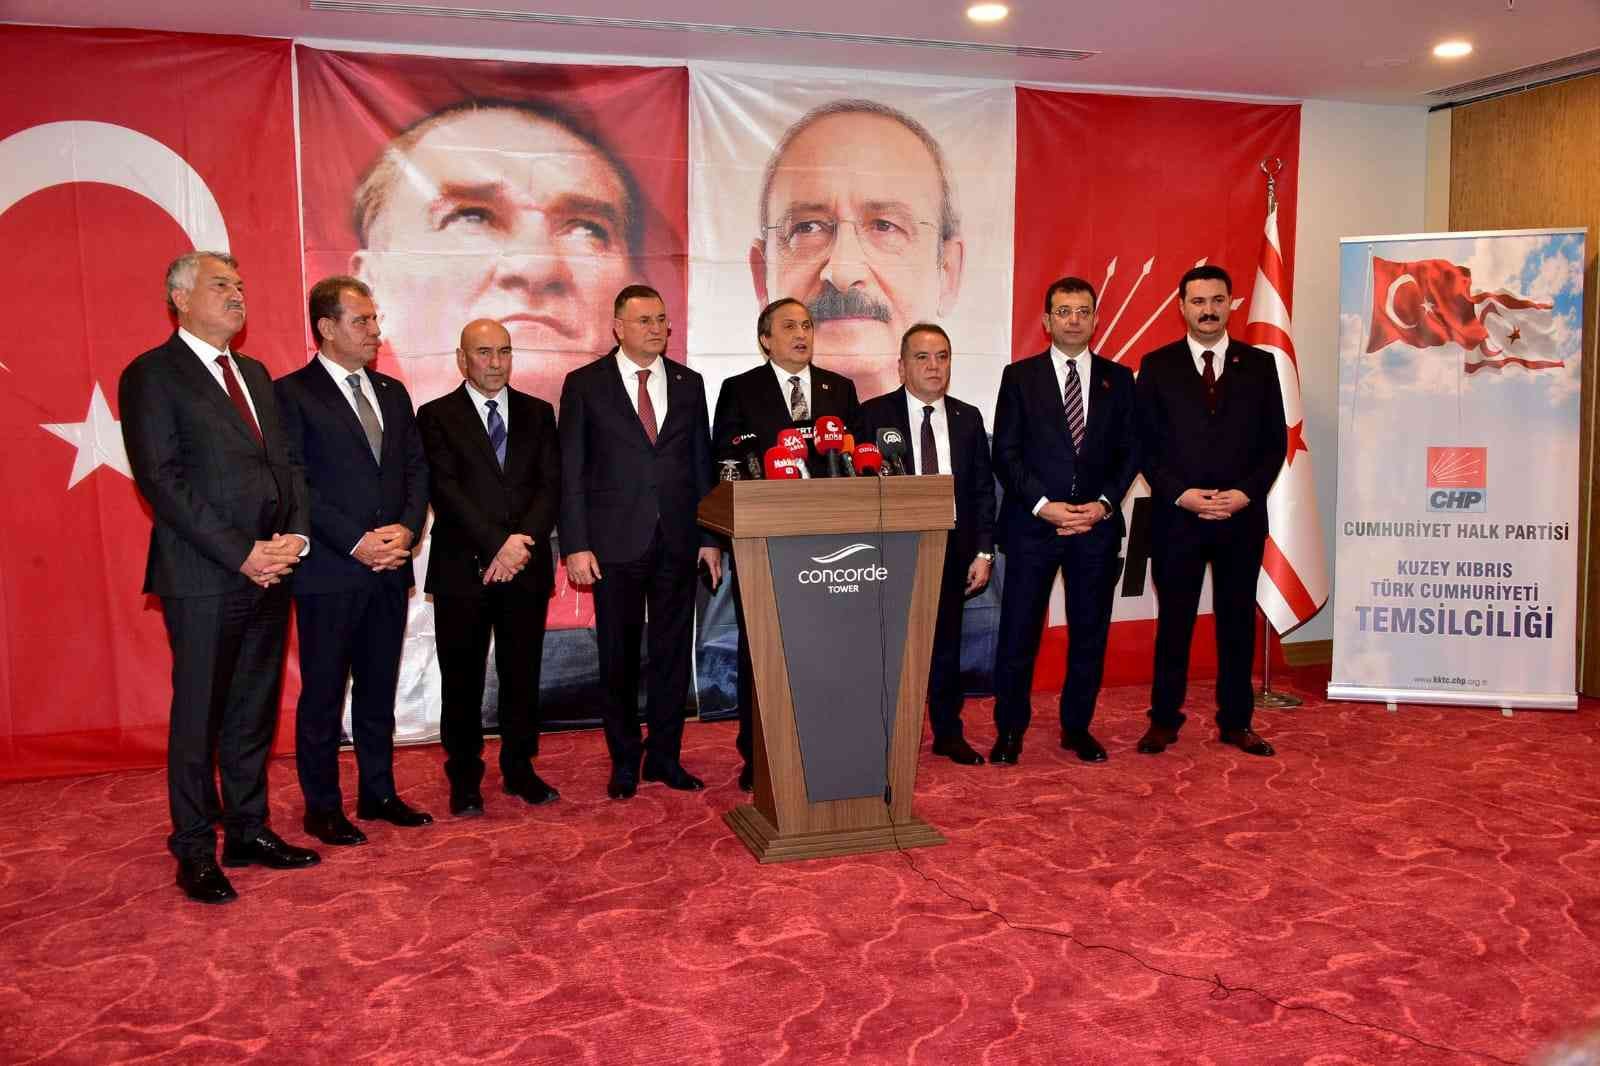 CHP Genel Başkan Yardımcısı Torun: “Amacımız KKTC’deki belediyelere katkıda bulunmak”